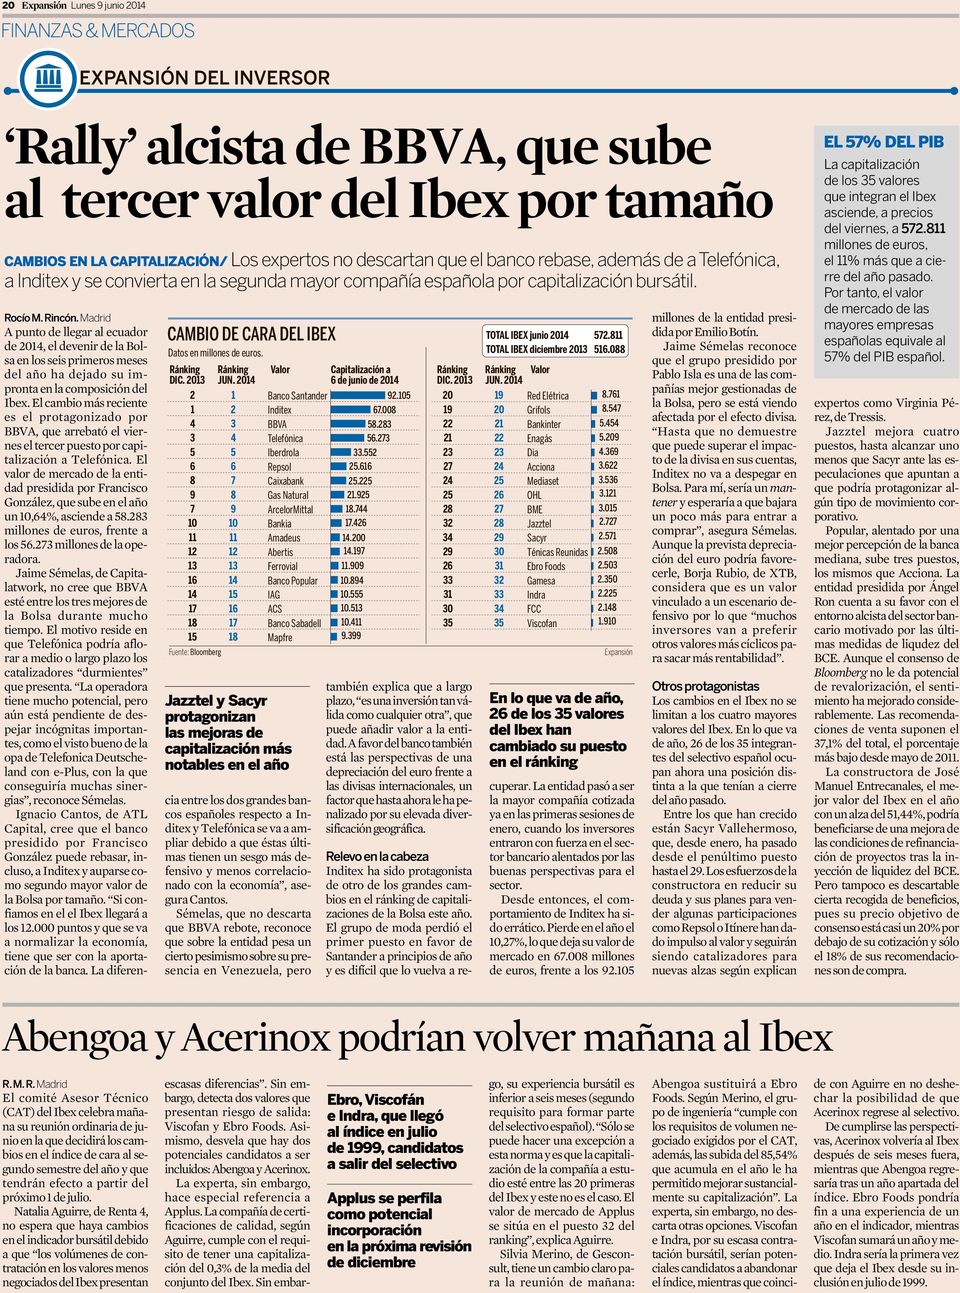 Madrid A punto de llegar al ecuador de 2014, el devenir de la Bolsa en los seis primeros meses del año ha dejado su impronta en la composición del Ibex.